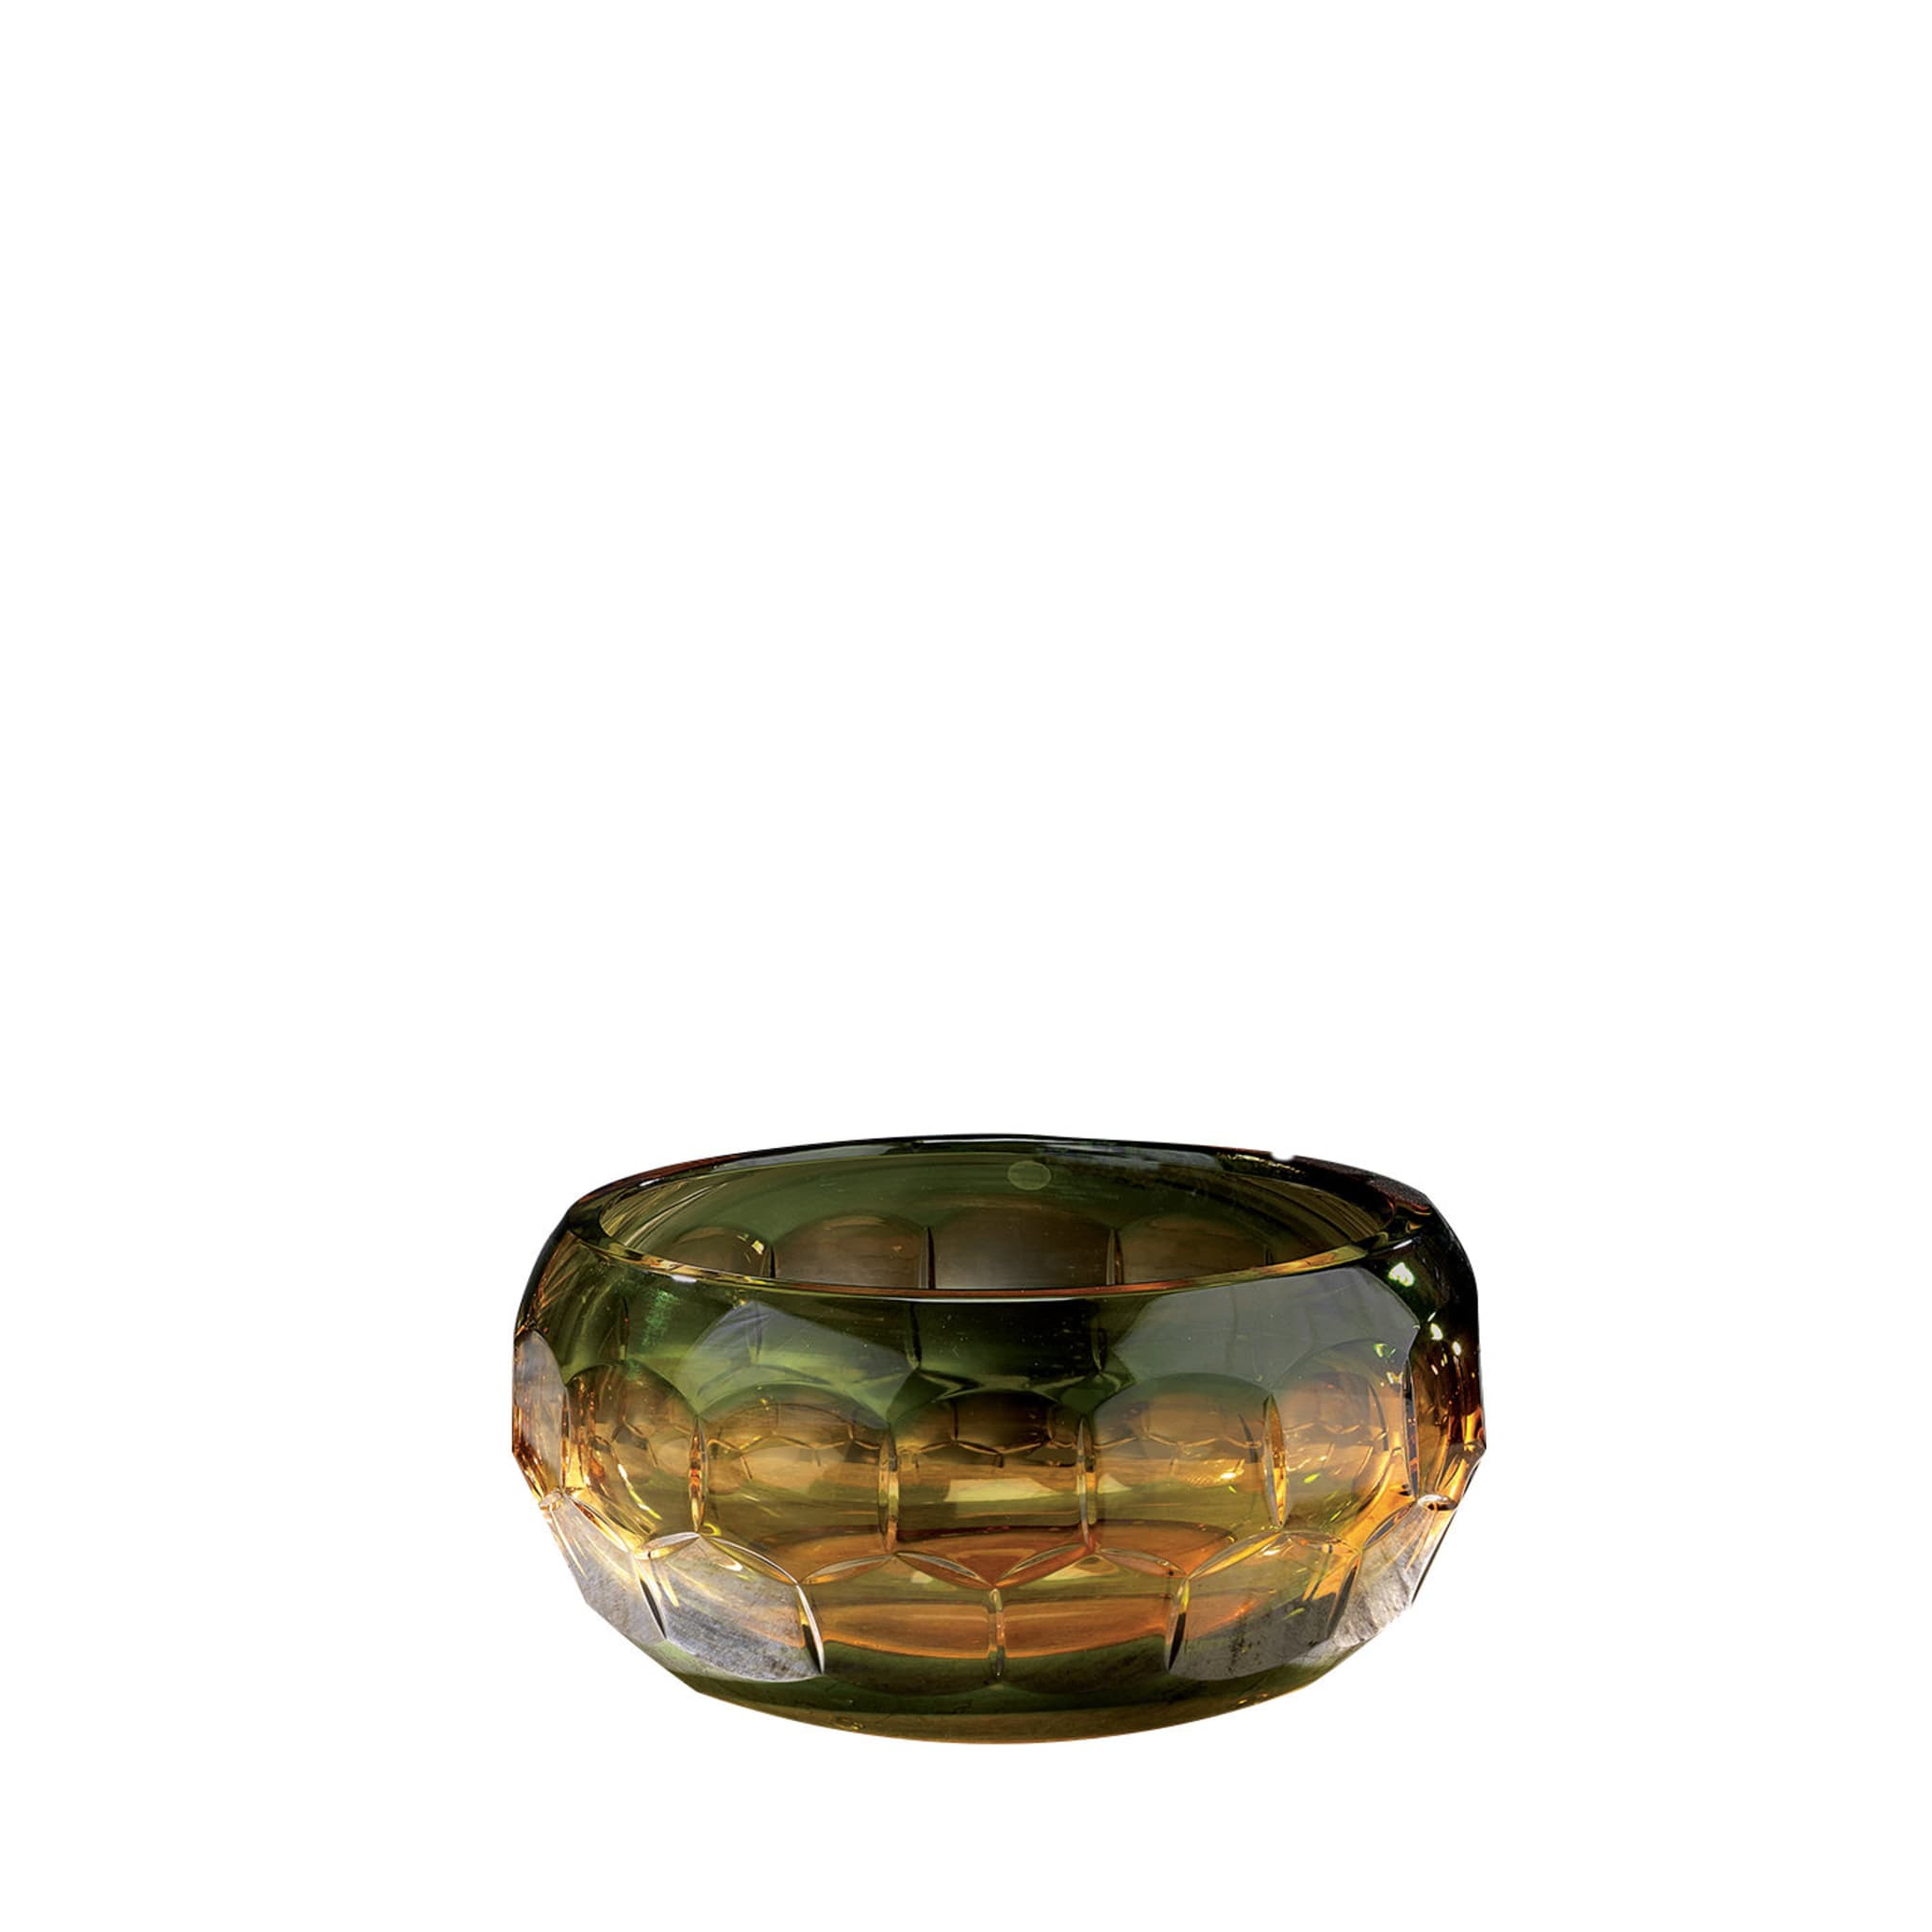 Ciotola di cristallo in ambra e verde - Vista principale